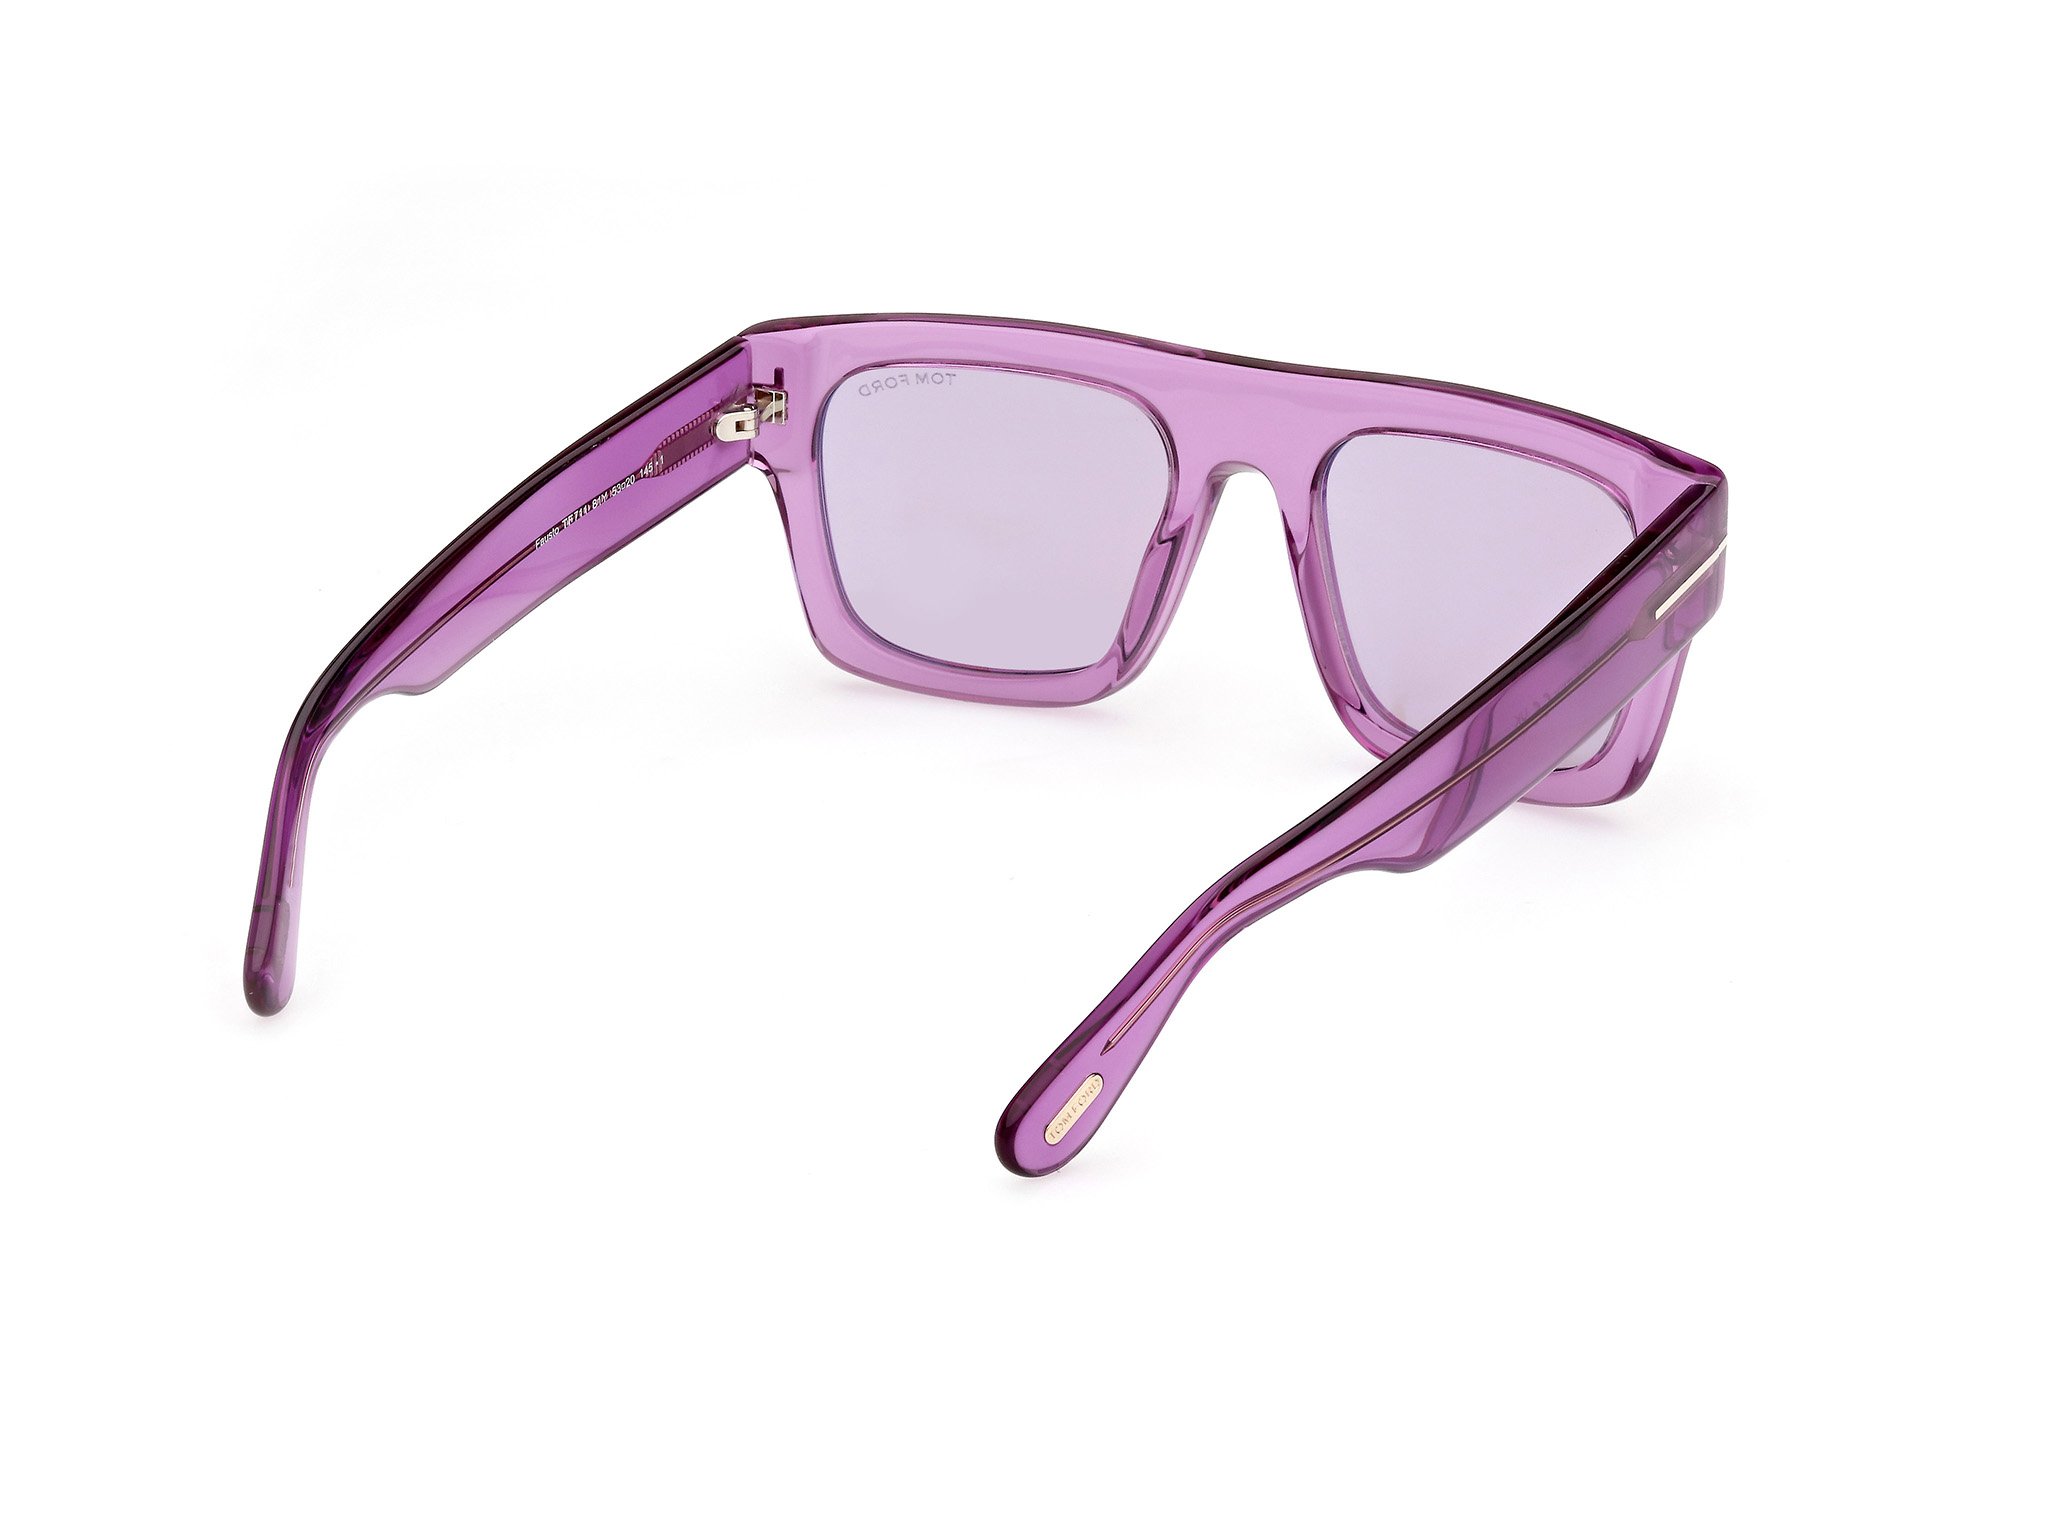 Tom Ford Sonnenbrille für Herren FT0711 81Y violett